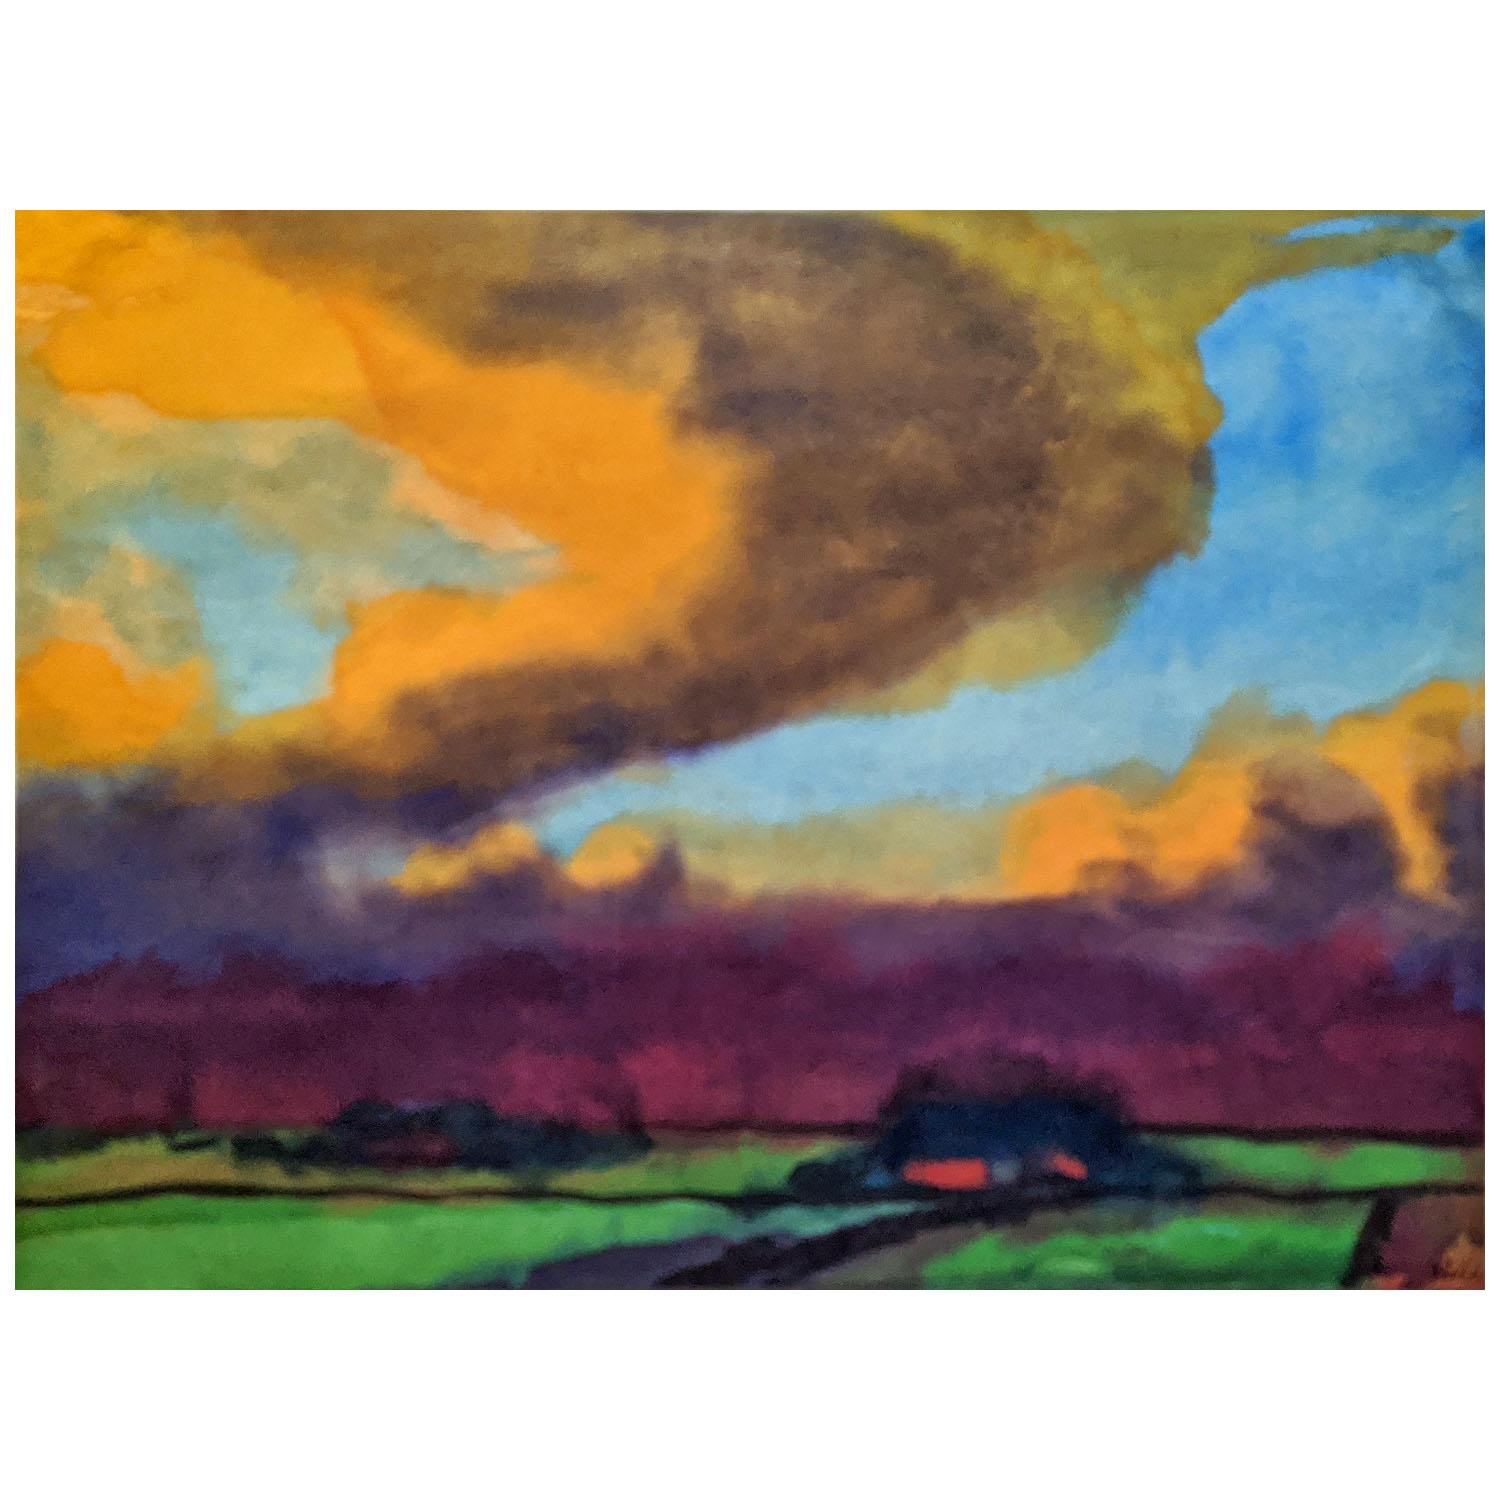 Эмиль Нольде. Болотный пейзаж с грозовым небом. 1935. Частное собрание